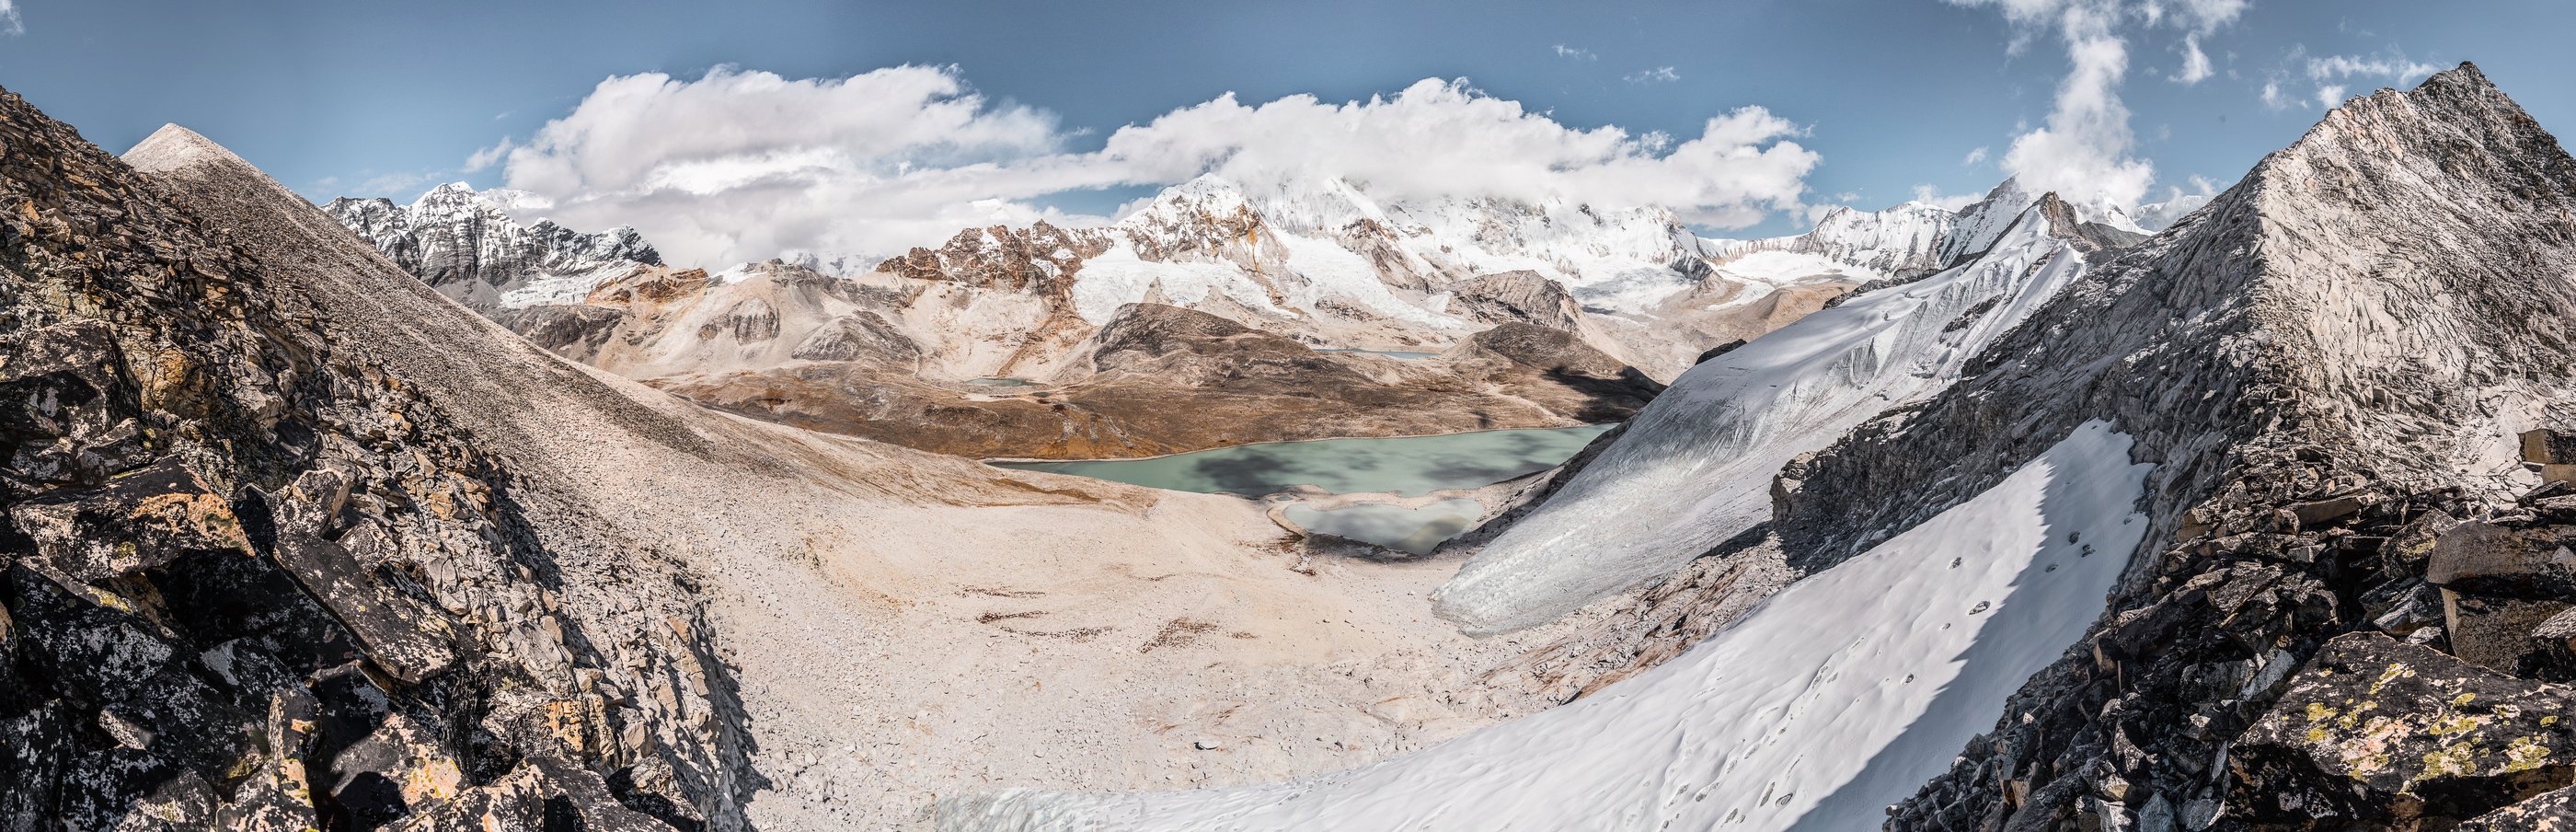 Непал, Гималаи, перевал Неплатильщиков, горы, Evgeniy Khilkevitch